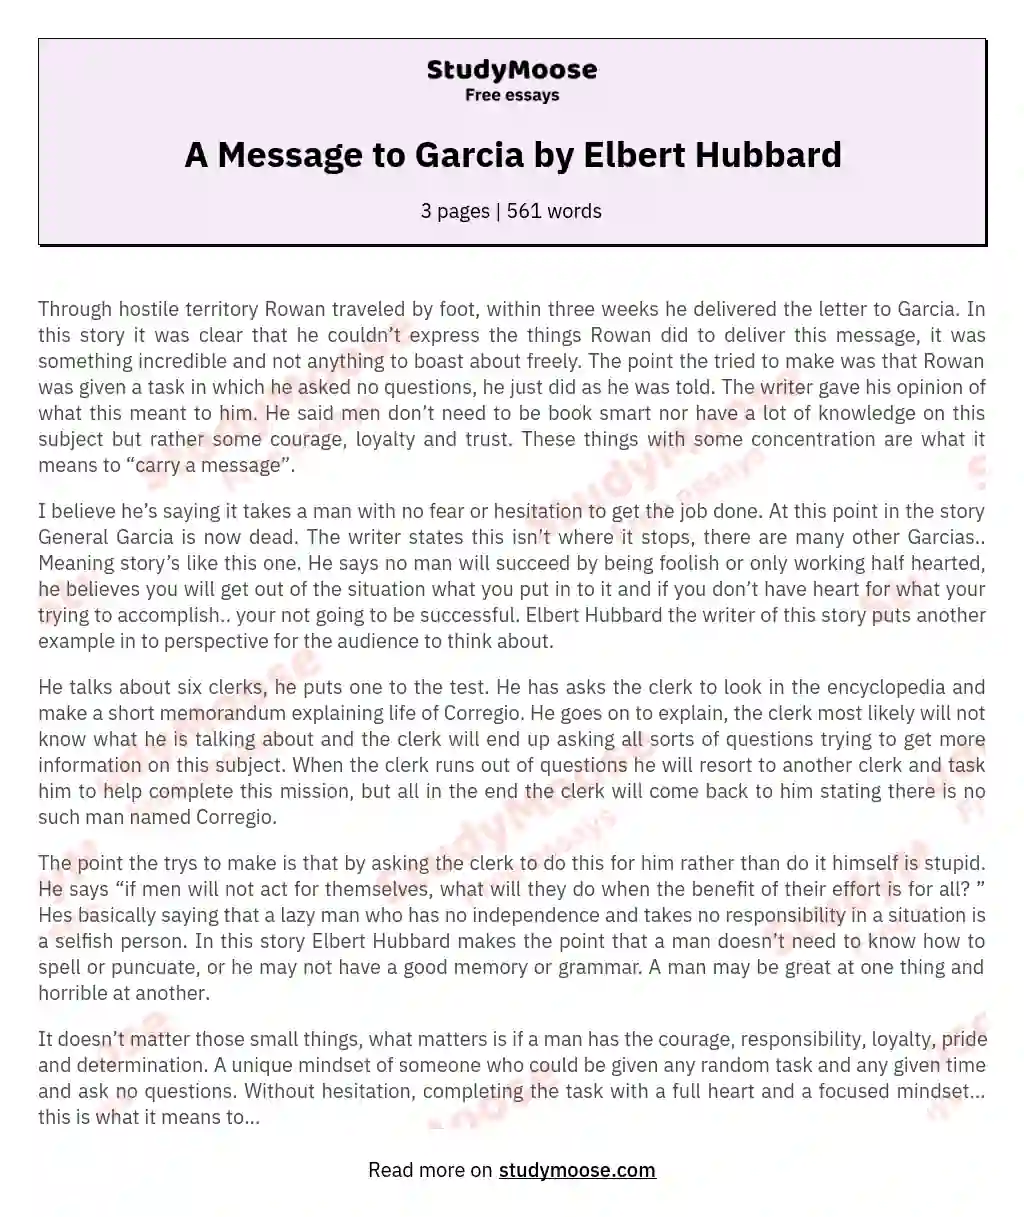 A Message to Garcia by Elbert Hubbard essay